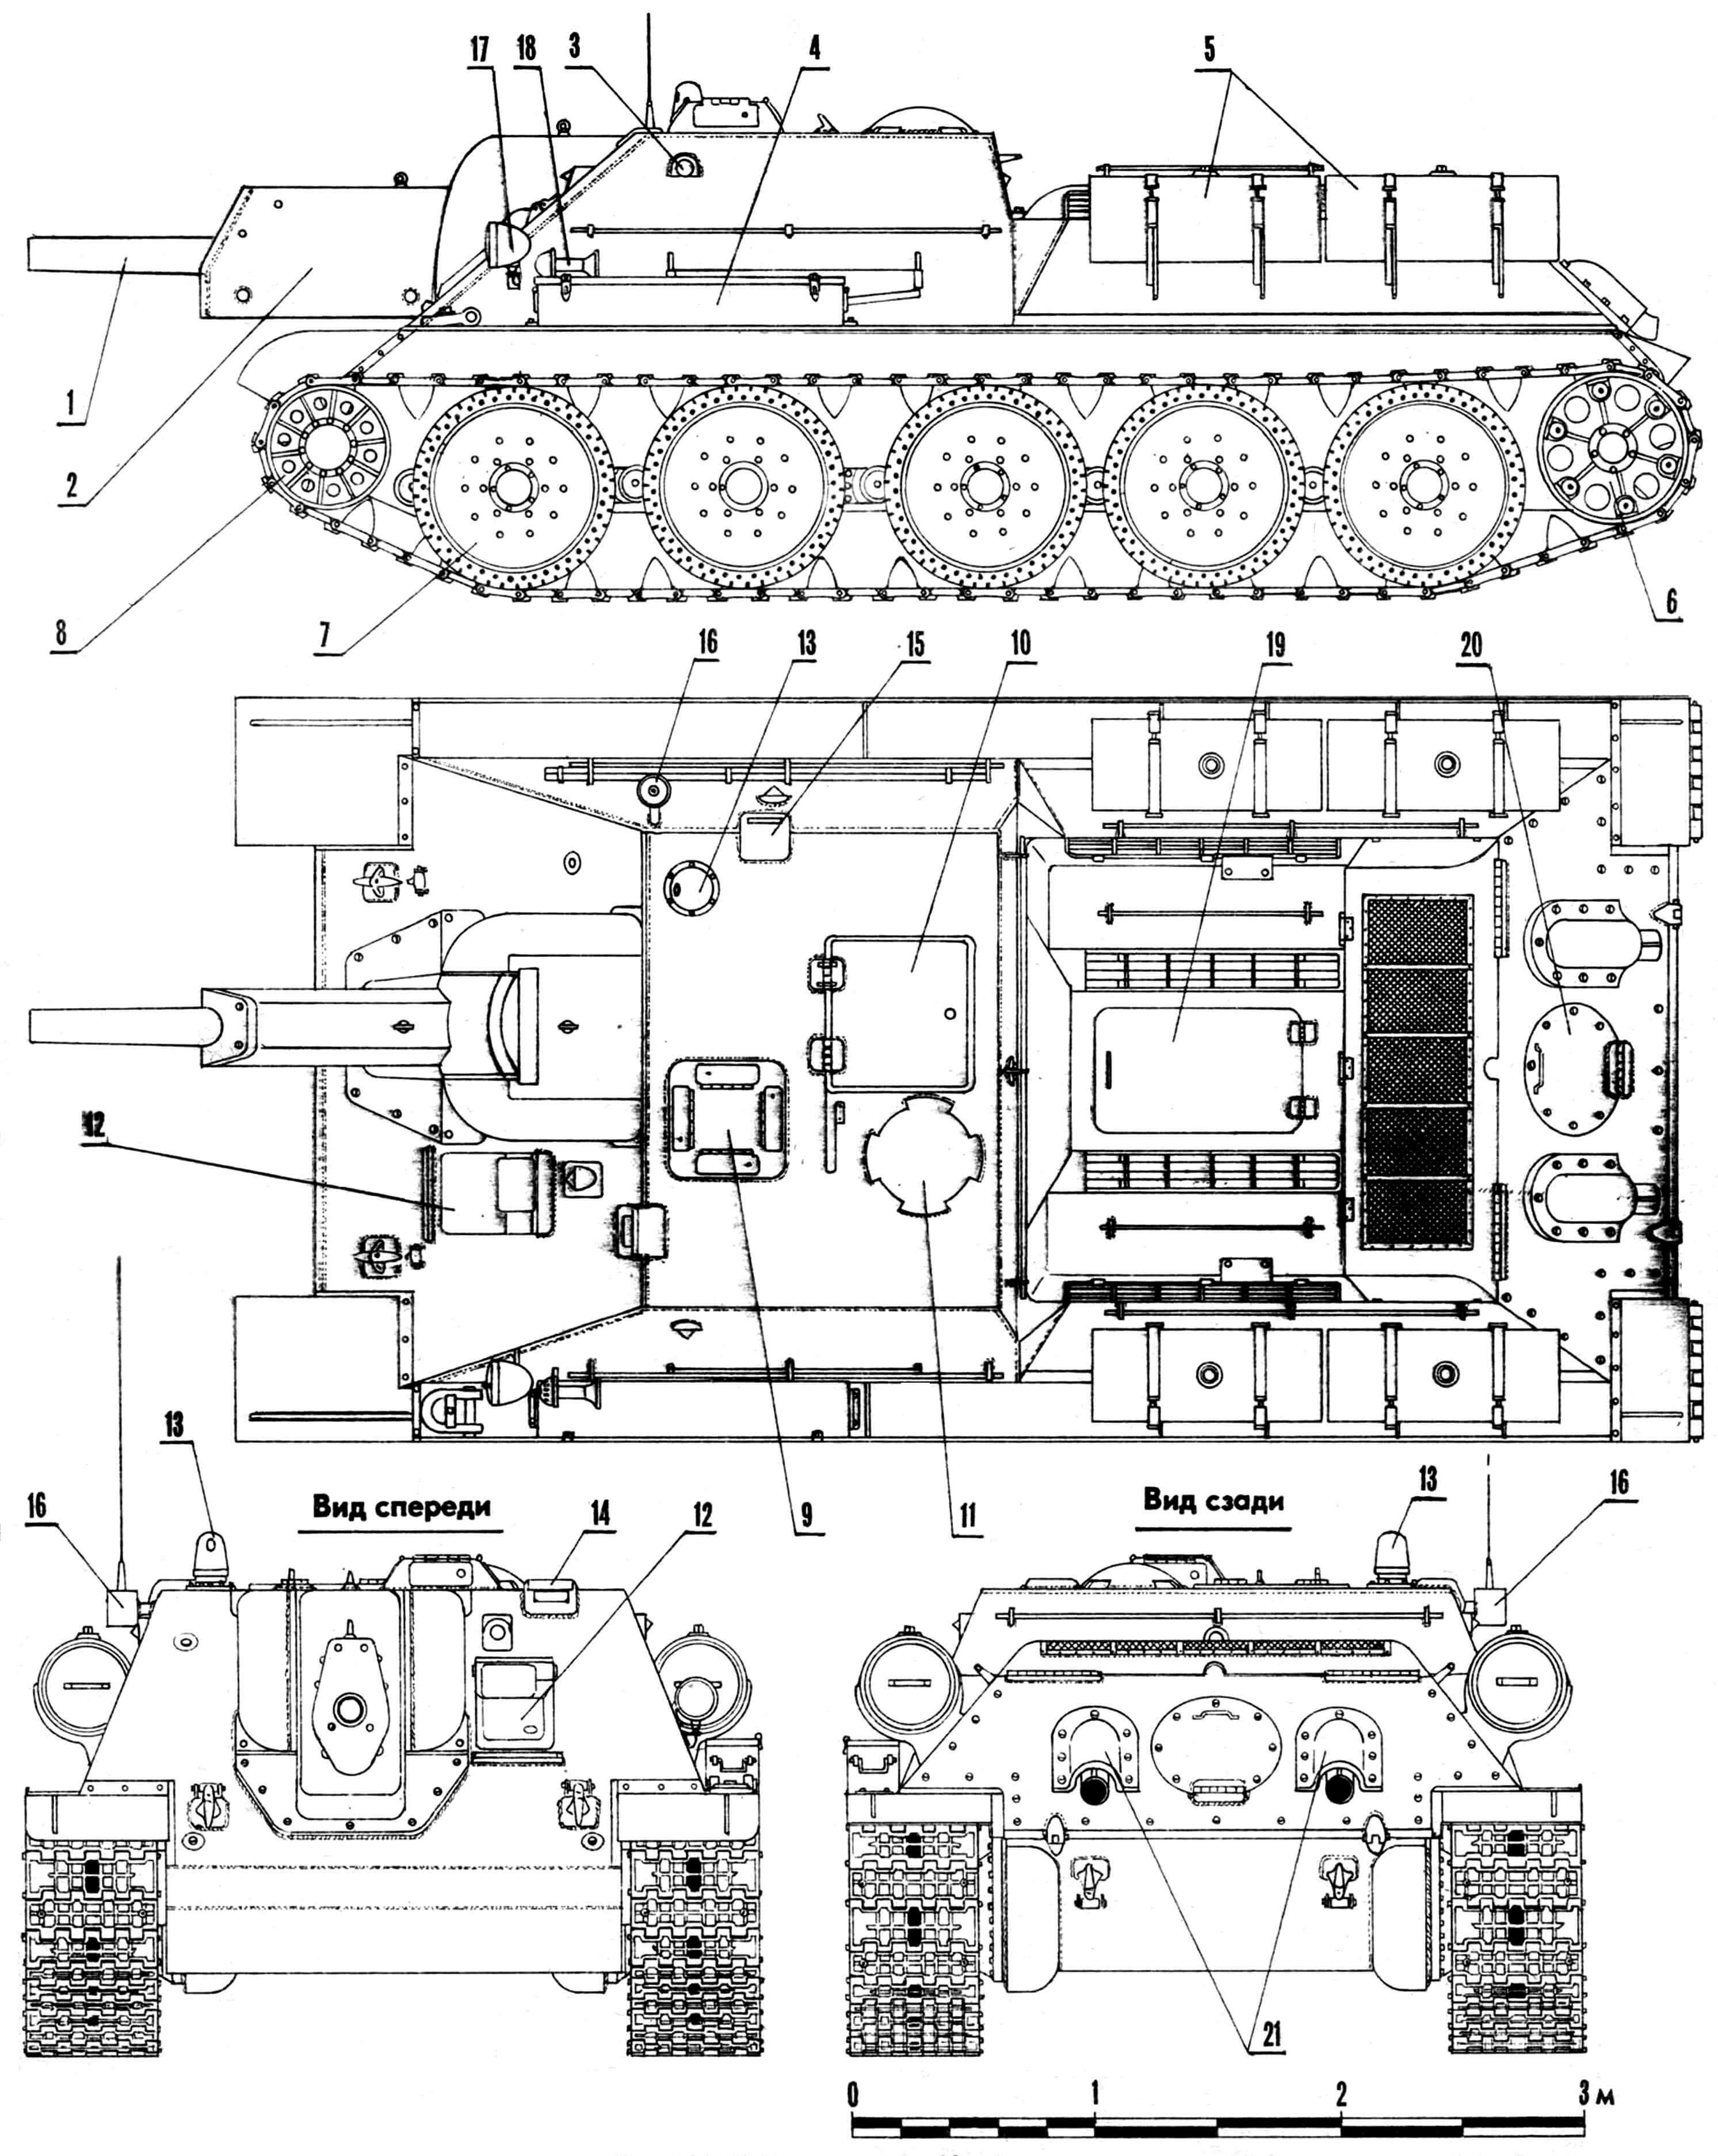 Самоходно-артиллерийская установка СУ-122: 1 — 122-мм гаубица, 2 — броневой кожух противооткатных устройств, 3 — броневая заглушка отверстия для стрельбы из личного оружия, 4 — ящик ЗИП, 5 — наружные топливные баки, 6 — ведущее колесо, 7 — опорный каток, 8 — направляющее колесо, 9 — броневой козырек панорамного прицела, 10 — крышка посадочного люка, 11 — колпак вентилятора, 12 — крышка люка механика-водителя, 13 — бронеколпак прибора наблюдения ПТК-5, 14 — бронировка прибора наблюдения наводчика, 15 — бронировка прибора наблюдения командира, 16 — ввод антенны, 17 — фара, 18 — сигнал, 19 — крышка надмоторного люка, 20 — крышка трансмиссионного люка, 21 — броневые колпаки выхлопных труб.